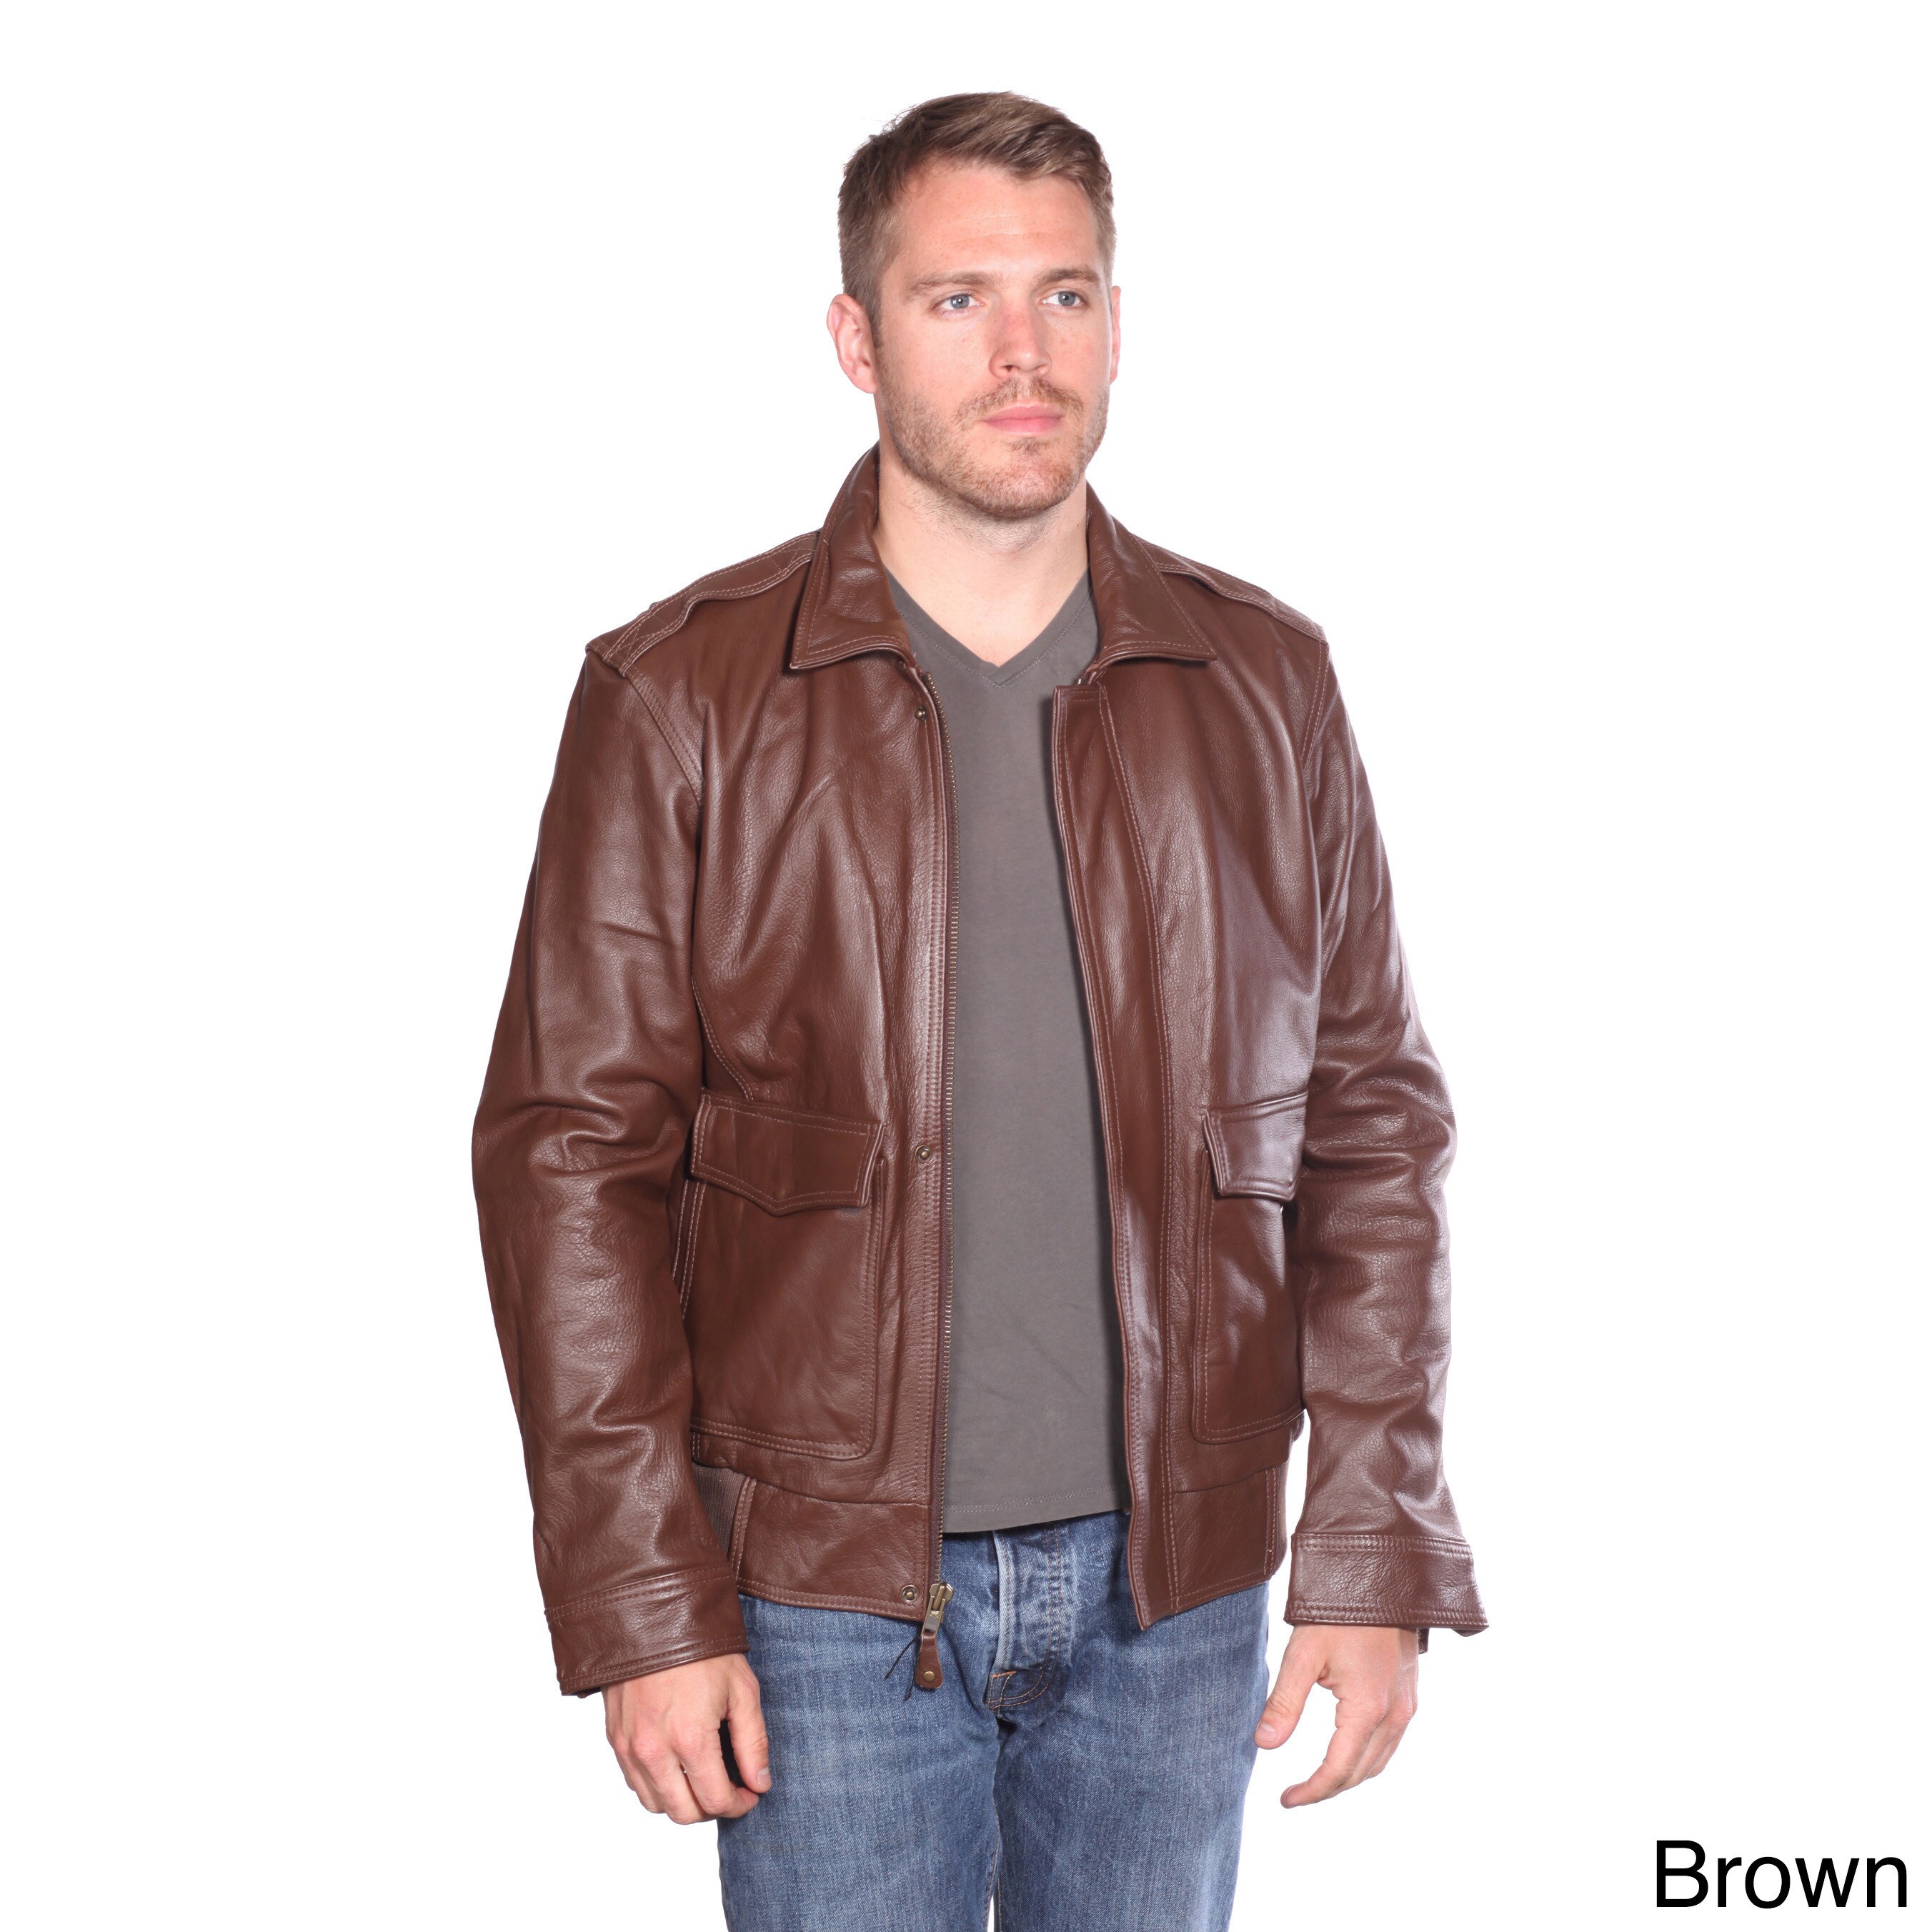 NuBorn Men's 'Roger' Leather Bomber Jacket Thinsulate Lining | eBay